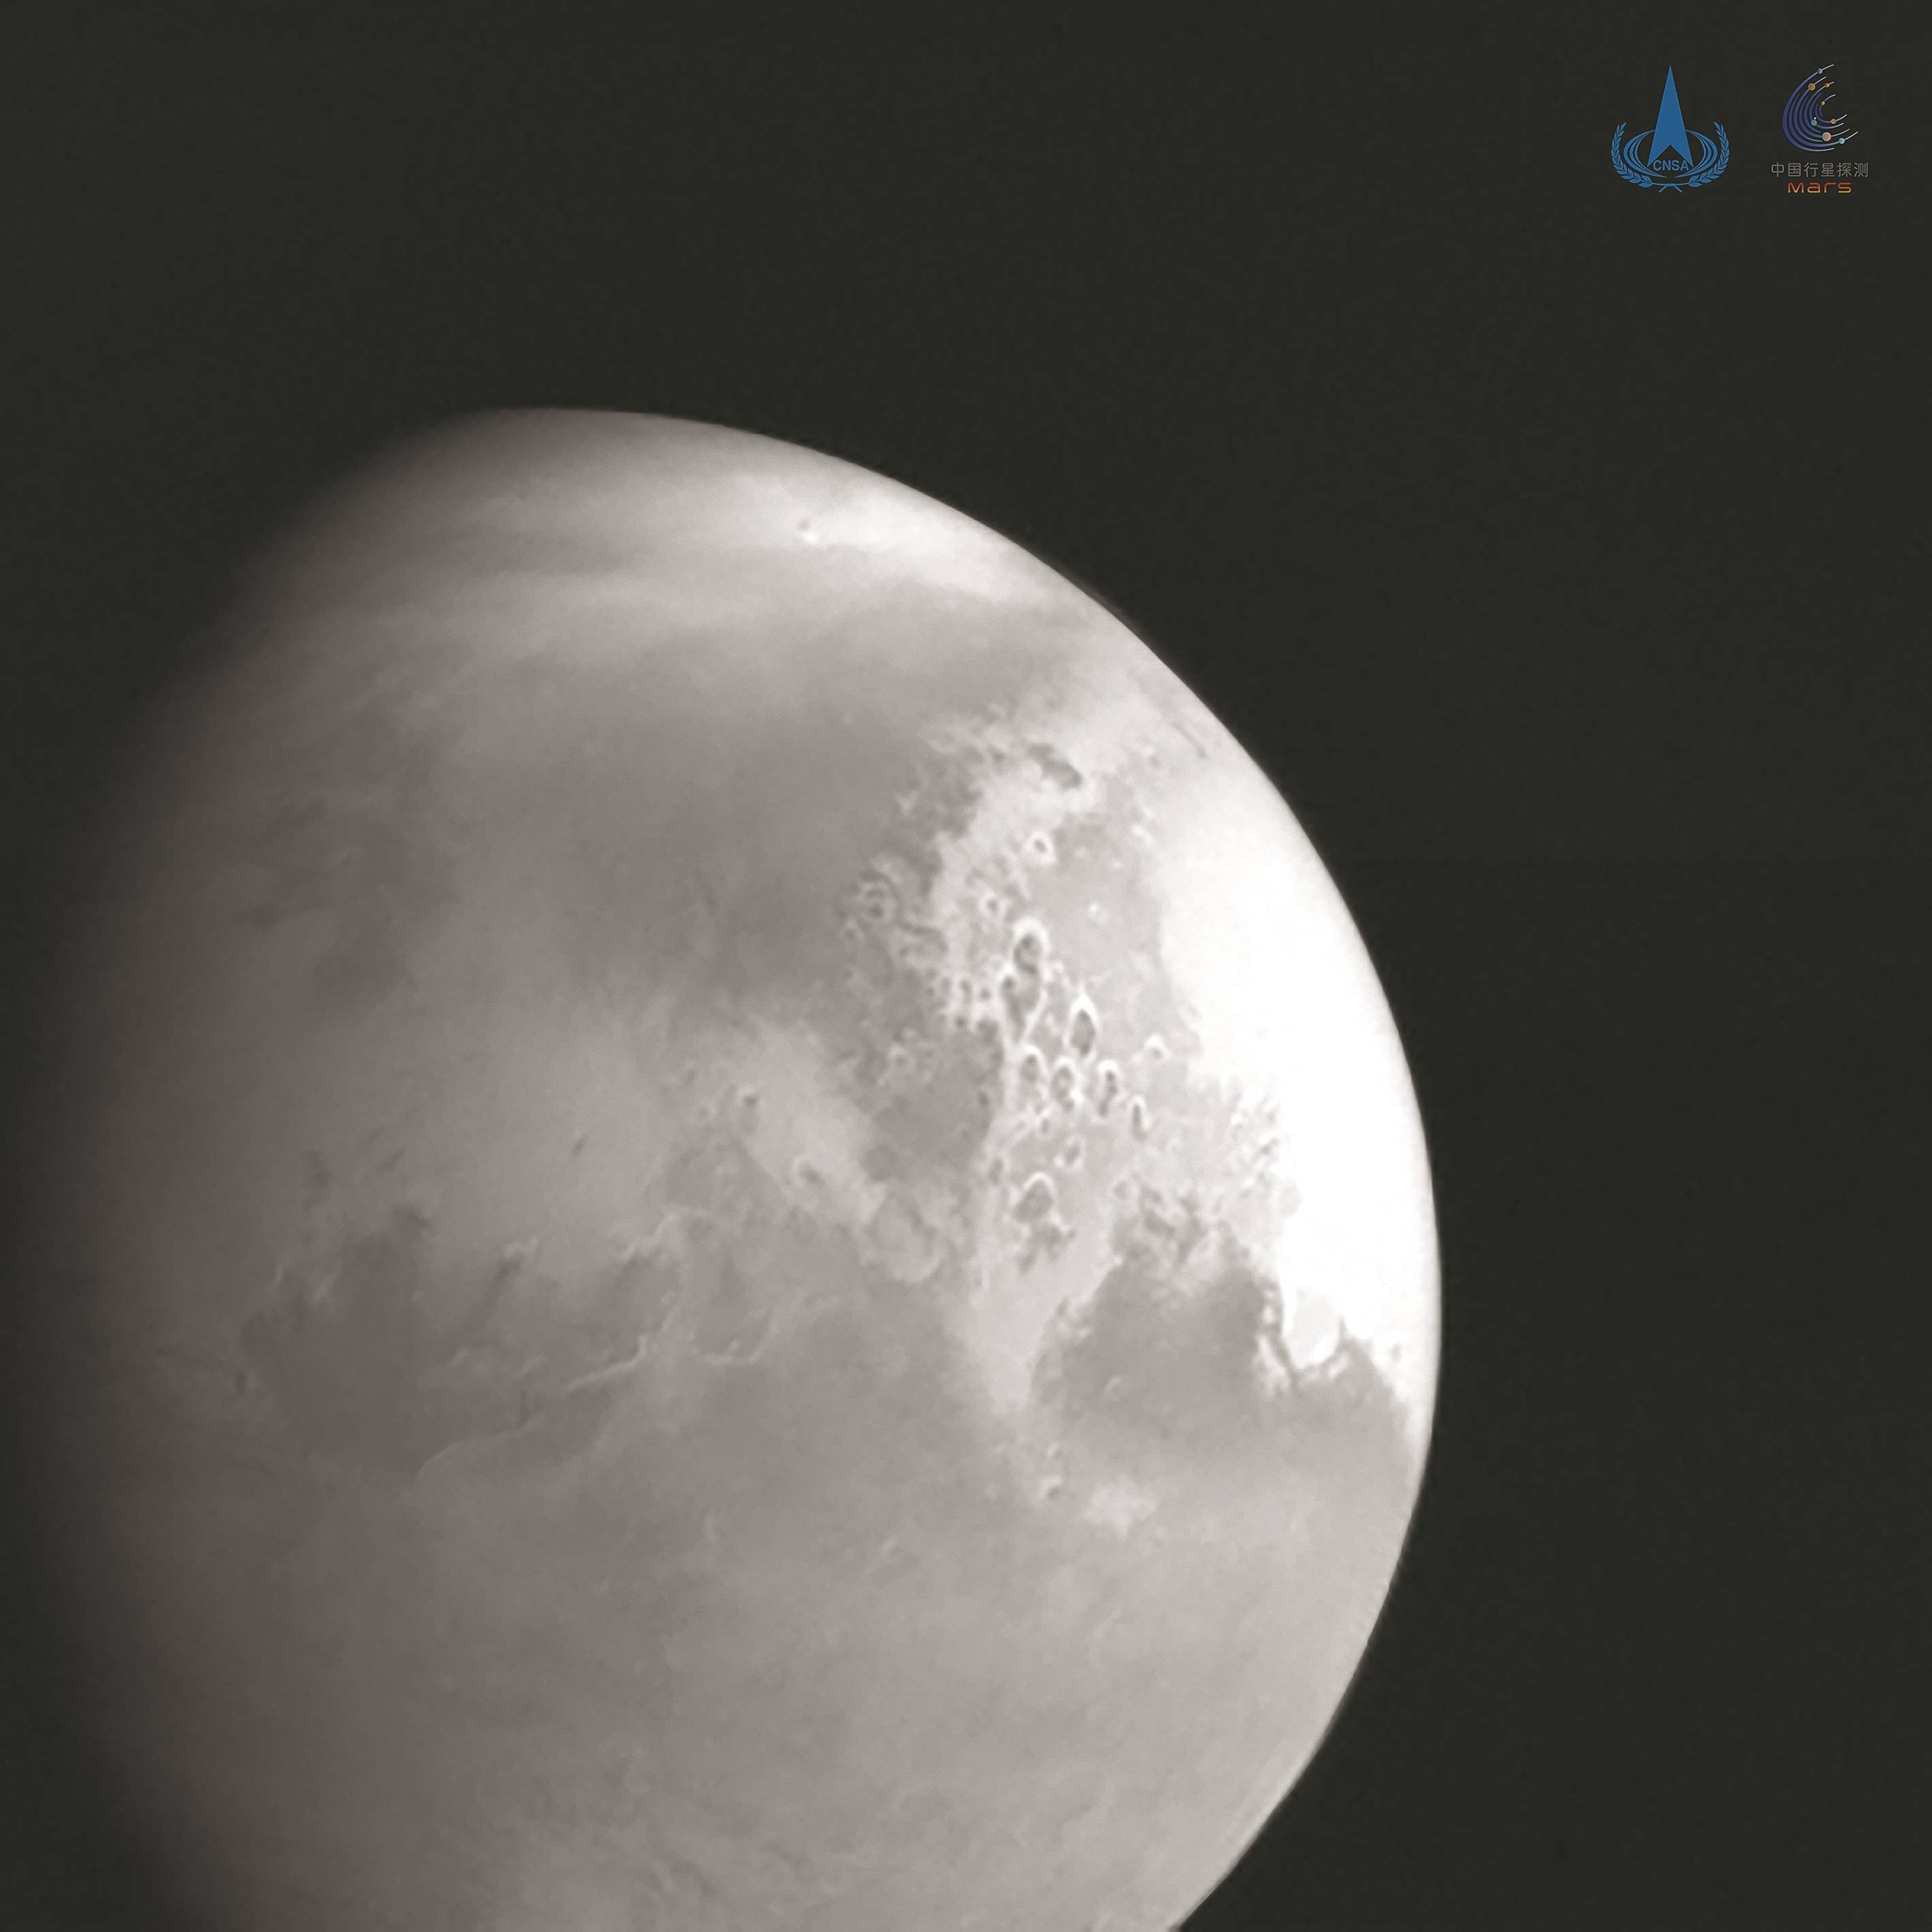 图像|“天问一号”传回首幅火星图像 除夕前后将开启环绕火星之旅